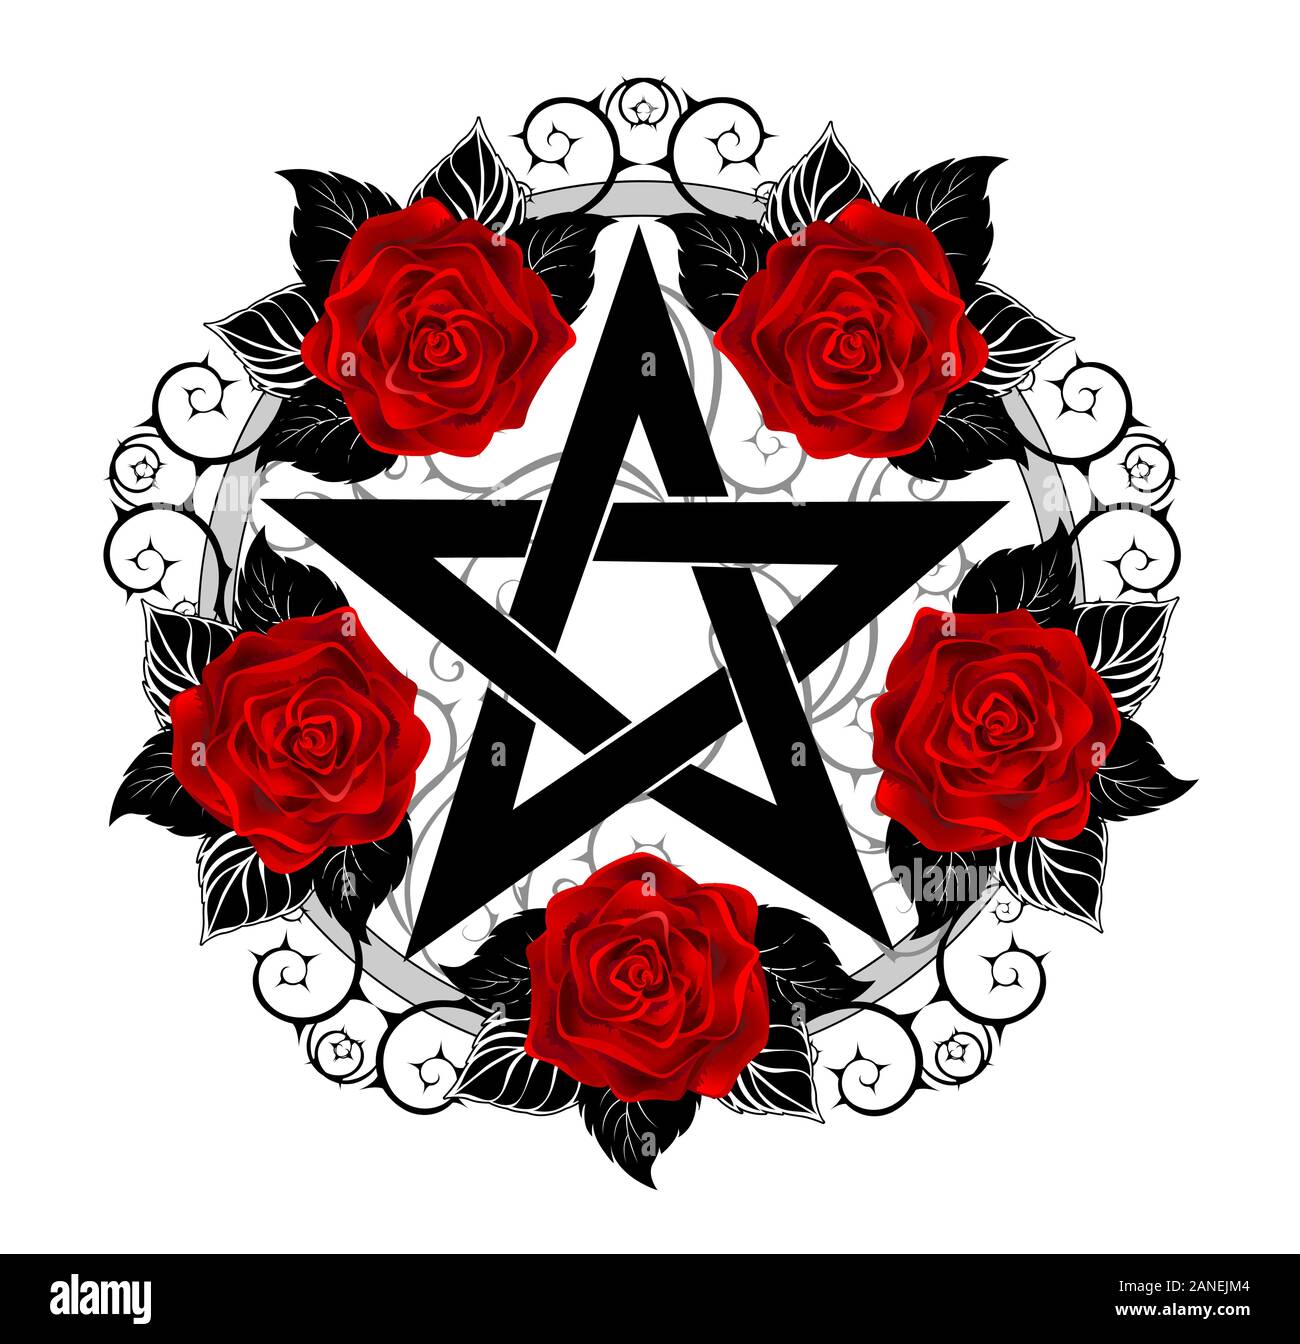 Pentagramme noir avec motif, décoré de fleurs, roses rouges avec des feuilles sur fond blanc. Style de tatouage. Illustration de Vecteur